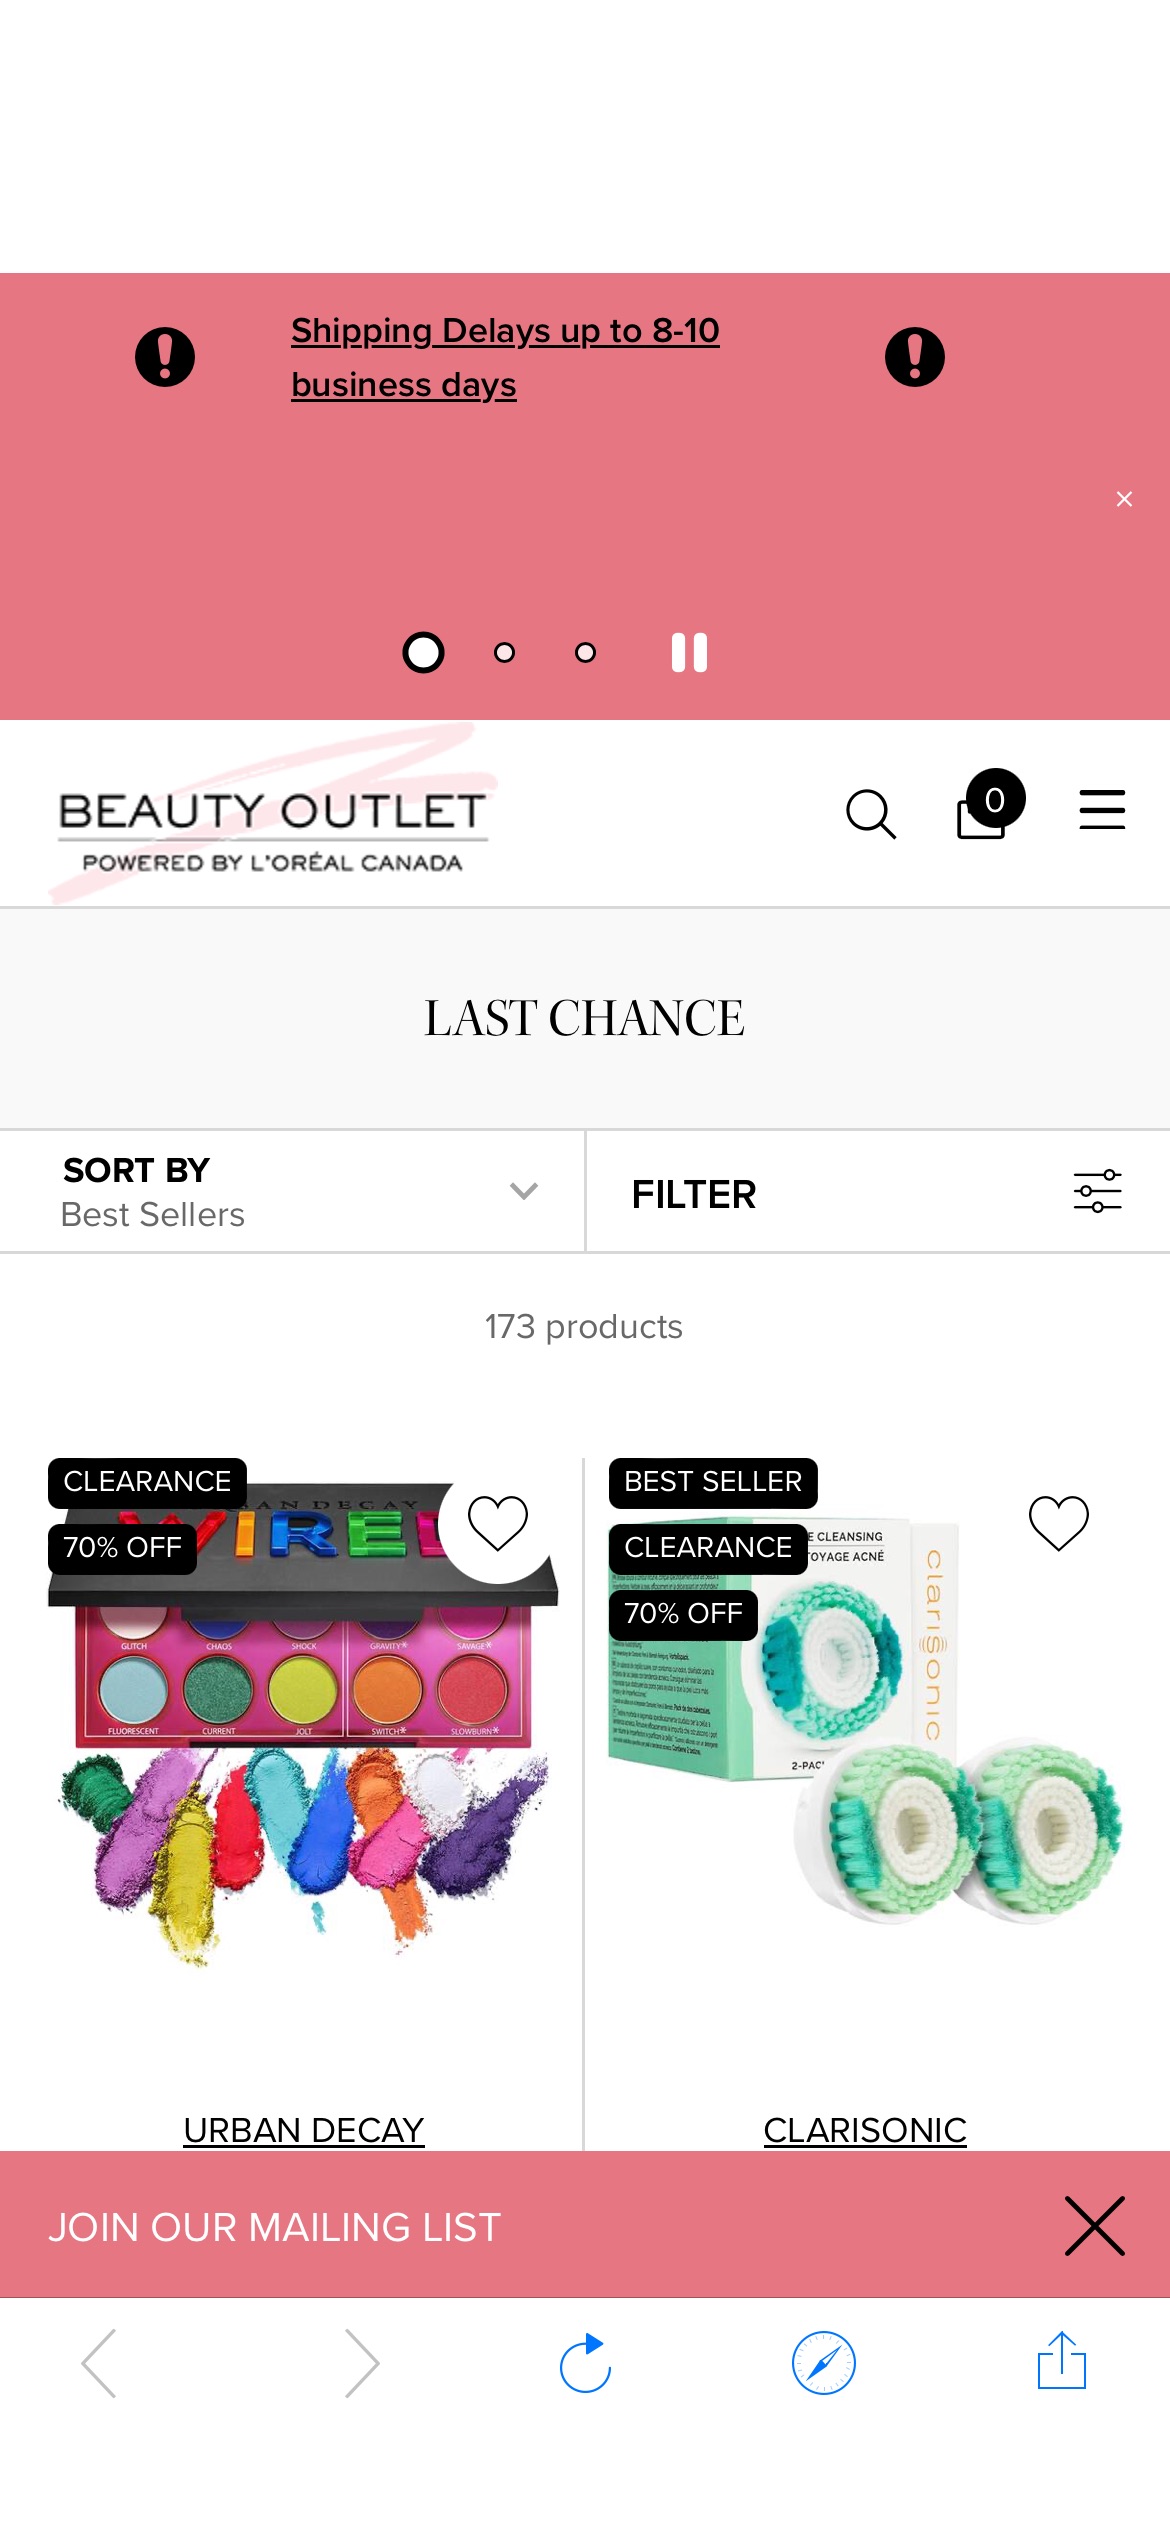 Last Chance Deals & Offers - L'Oréal Beauty Outlet Canada